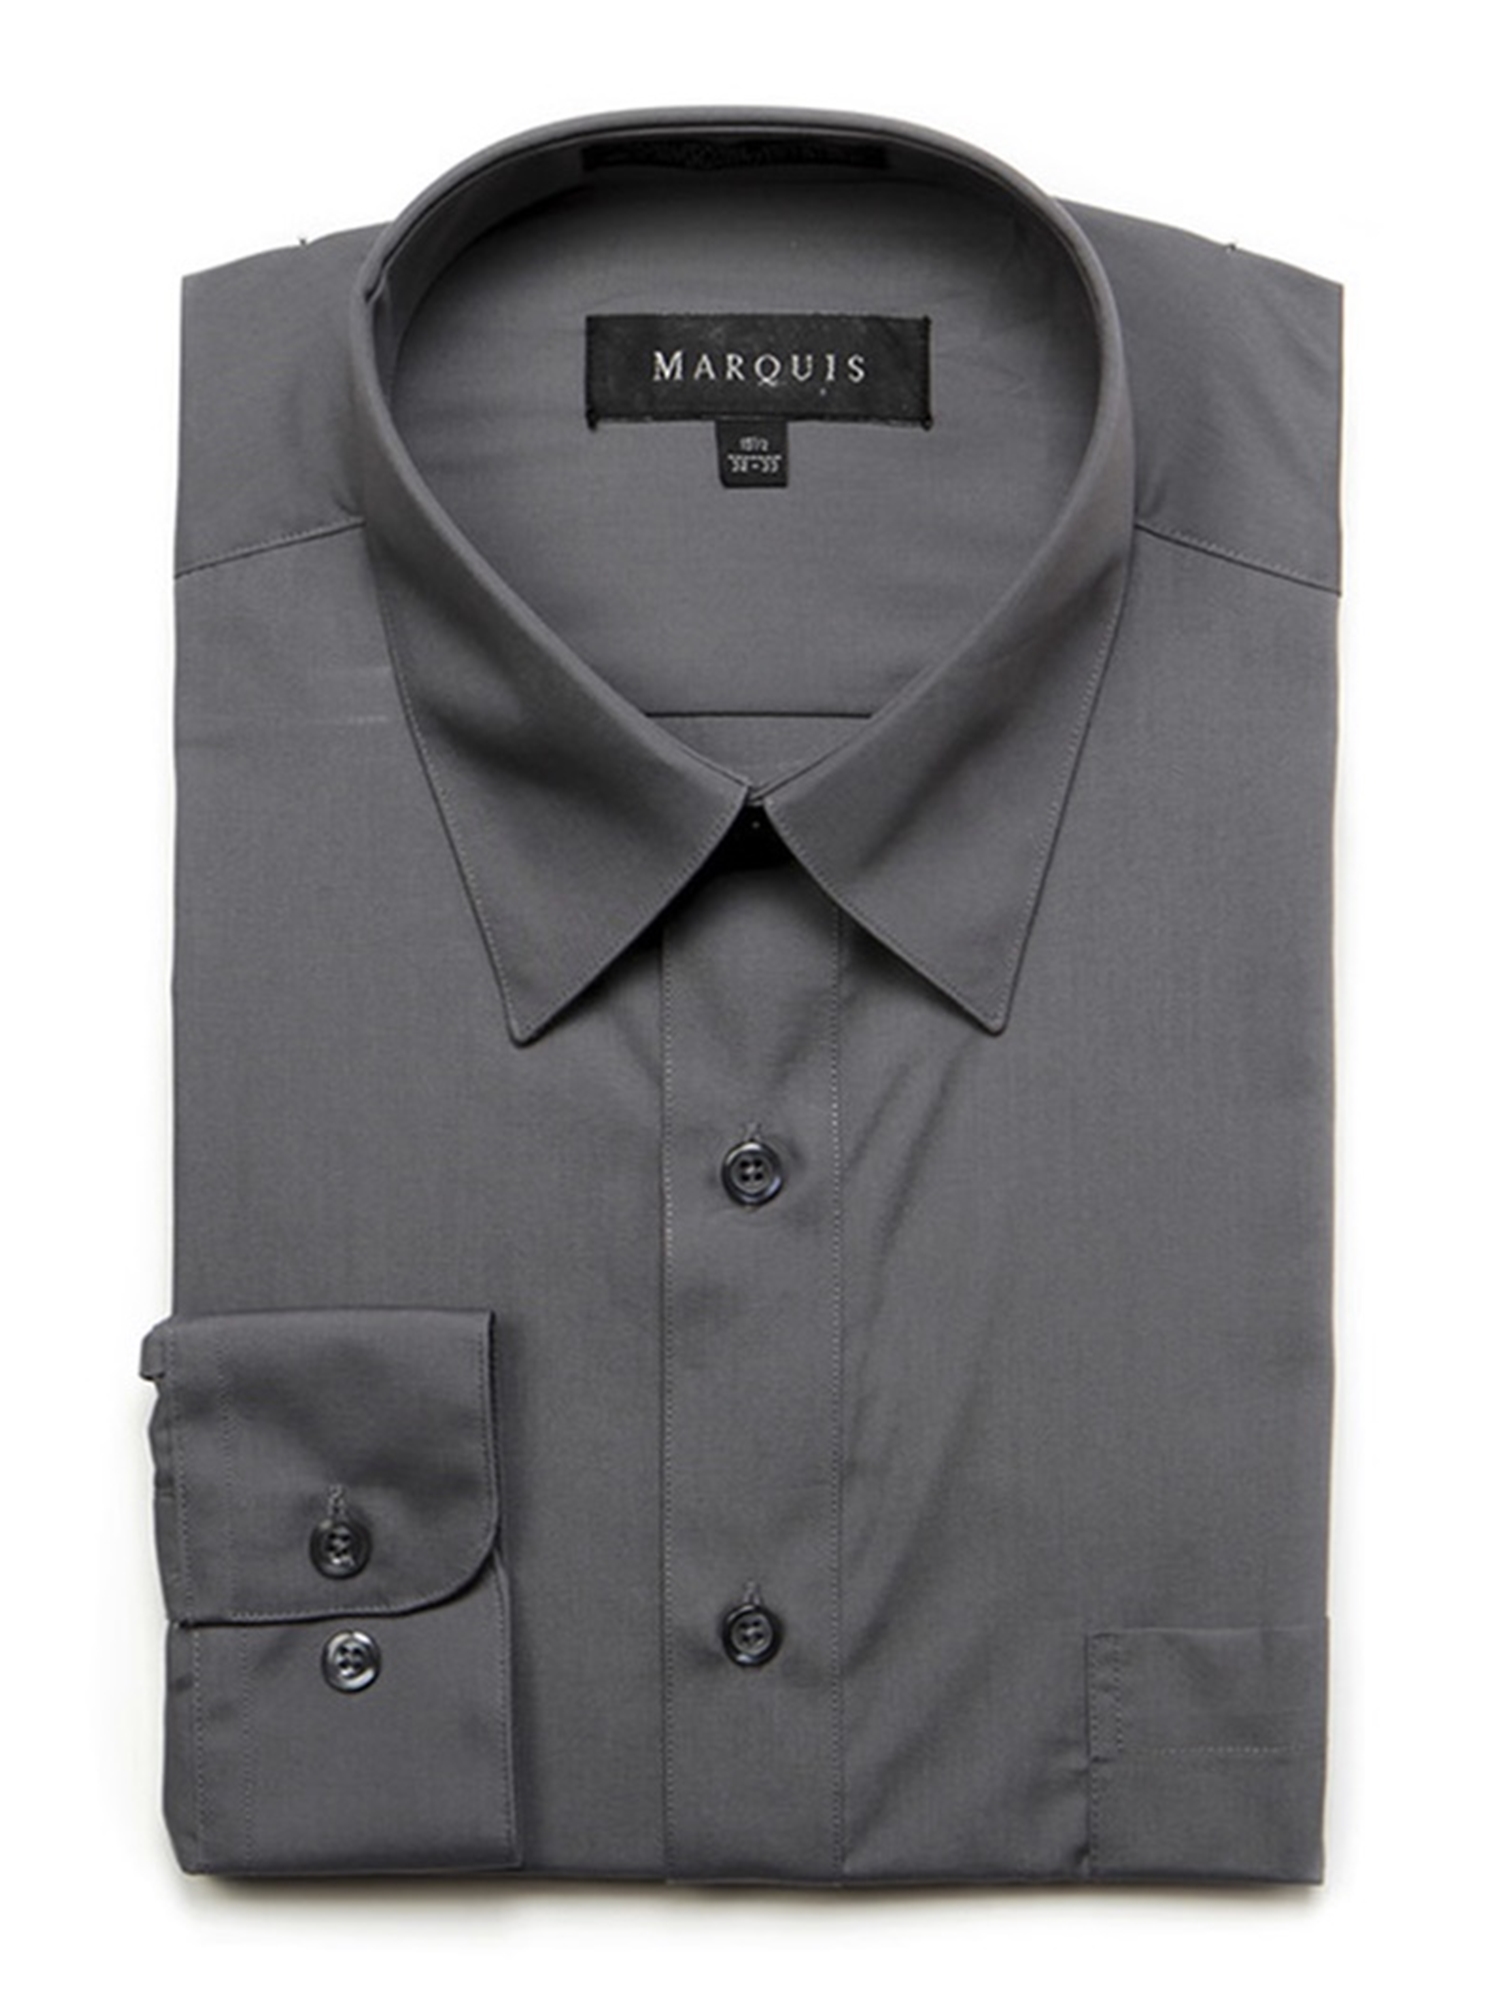 Marquis Men/'s Long Sleeve Regular Fit Dress Shirt